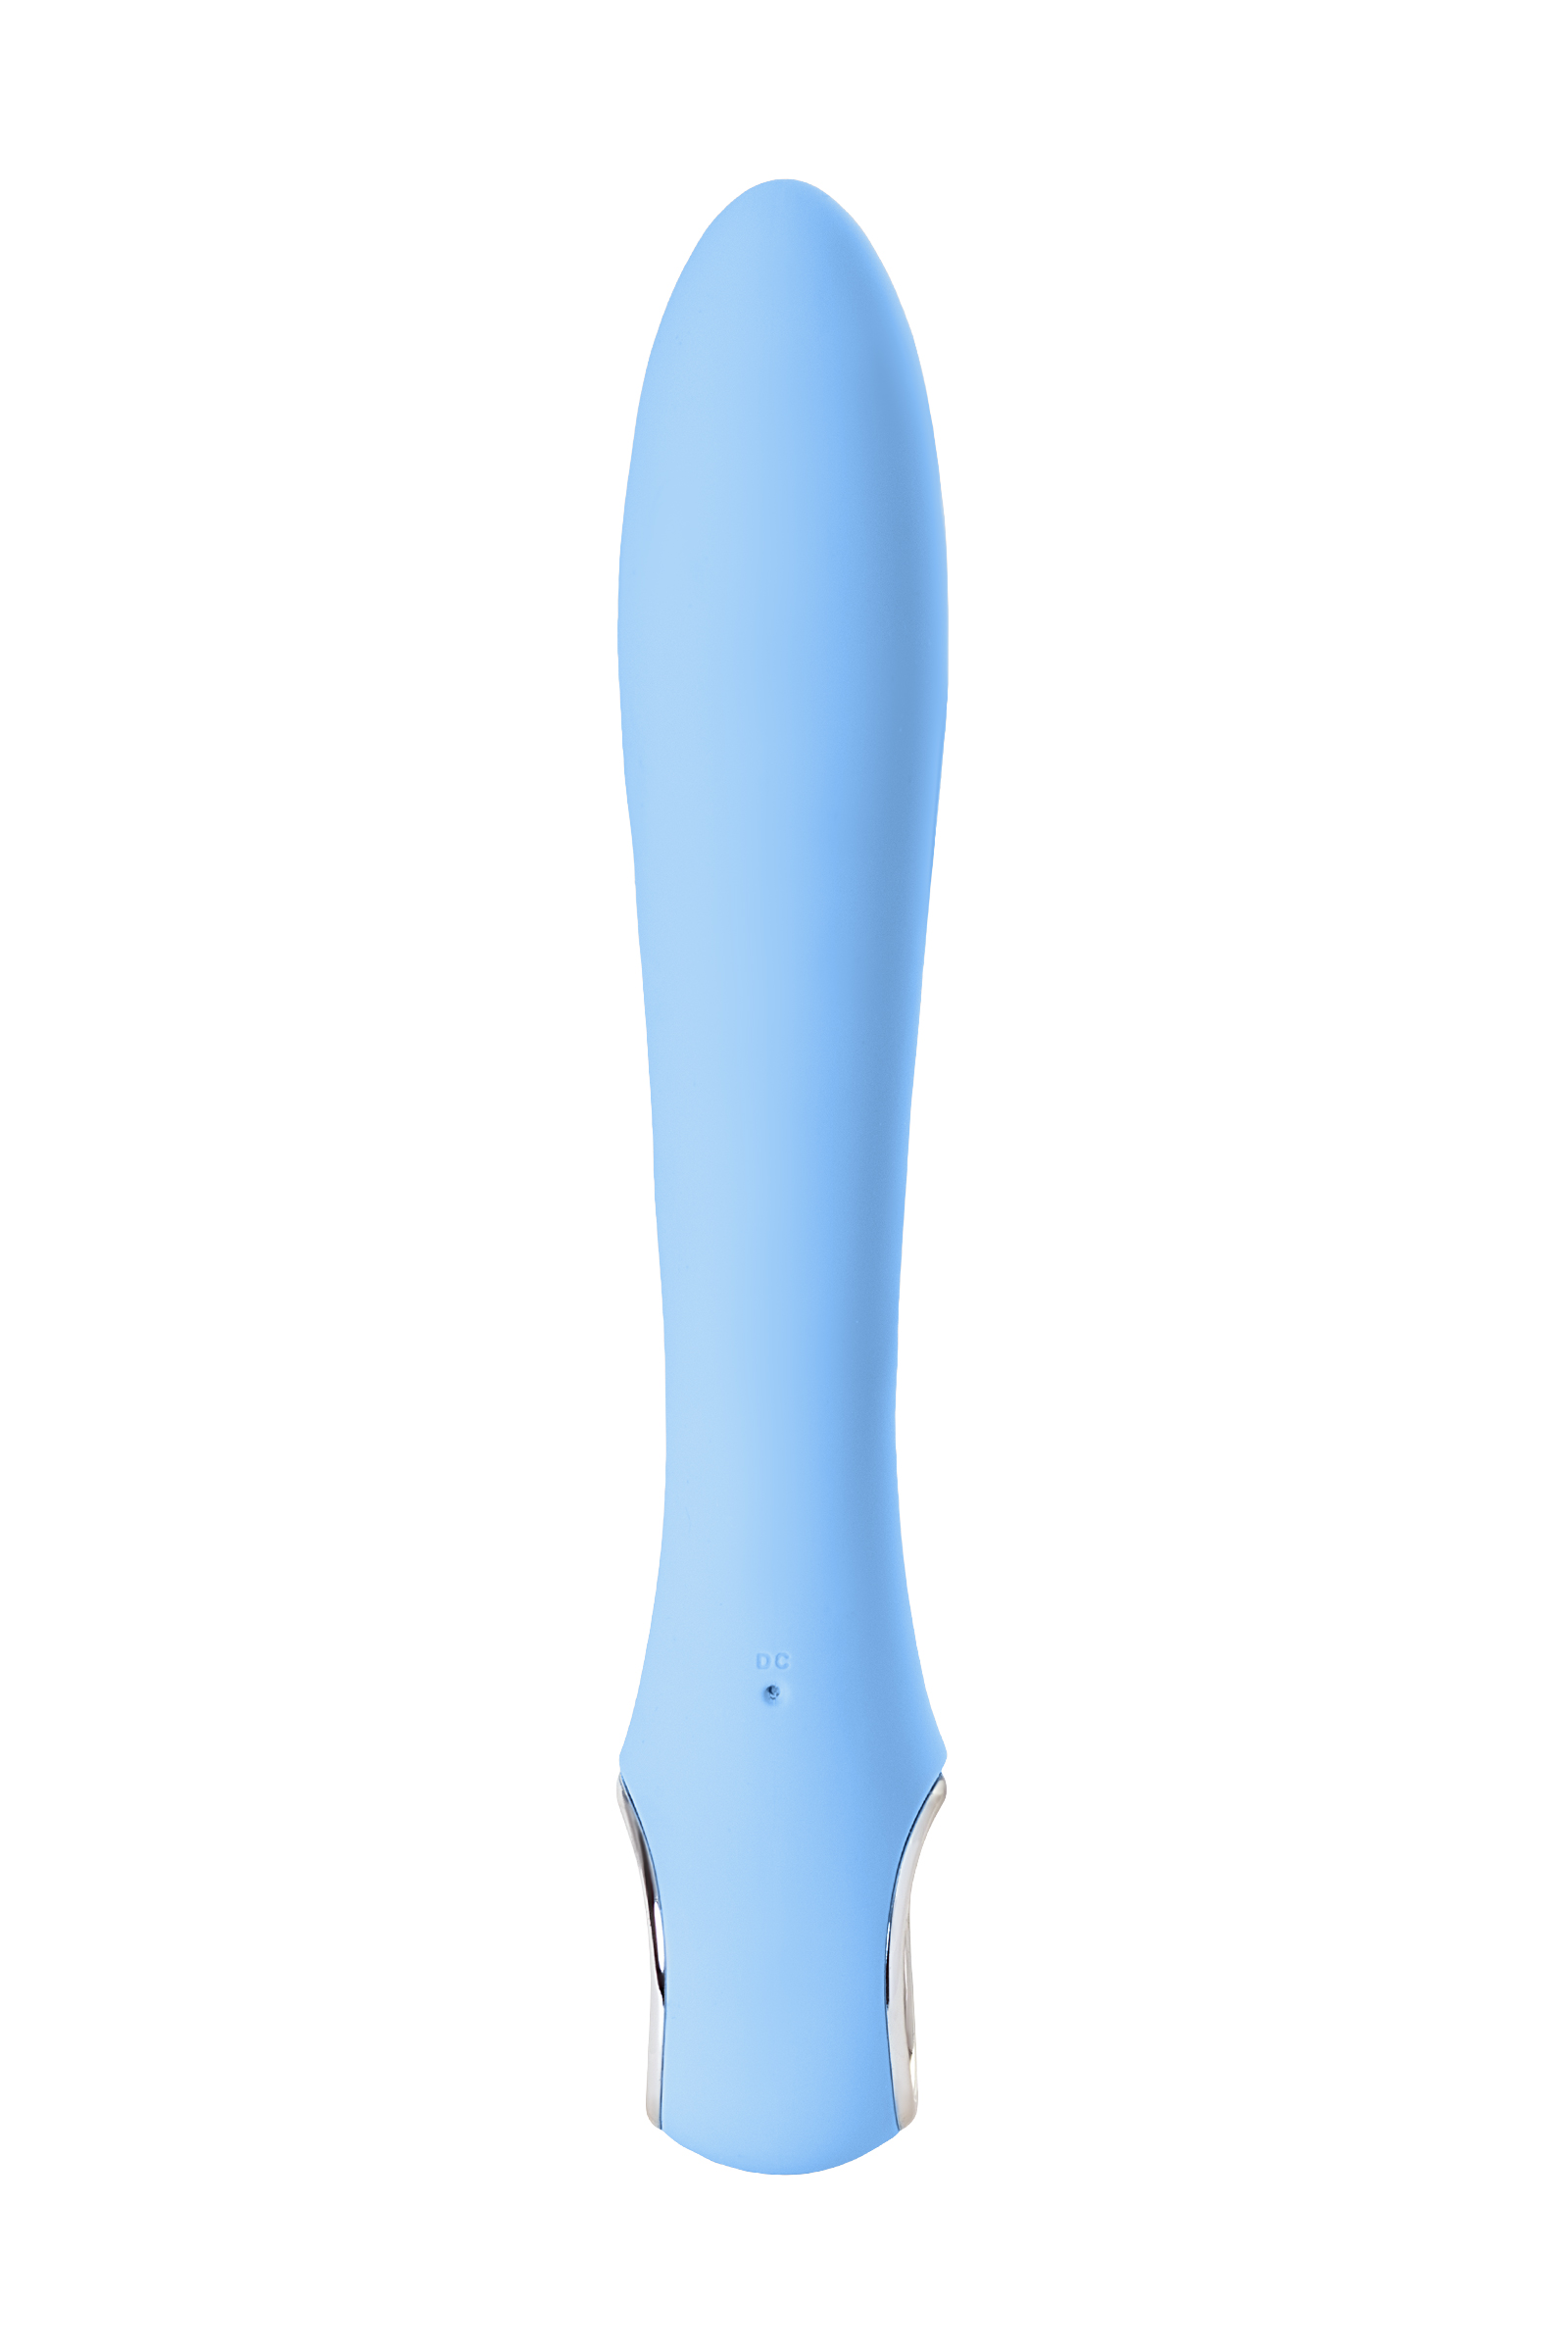 Вибратор с электростимуляцией PHYSICS GALVANI VIBE, 21 см, голубой